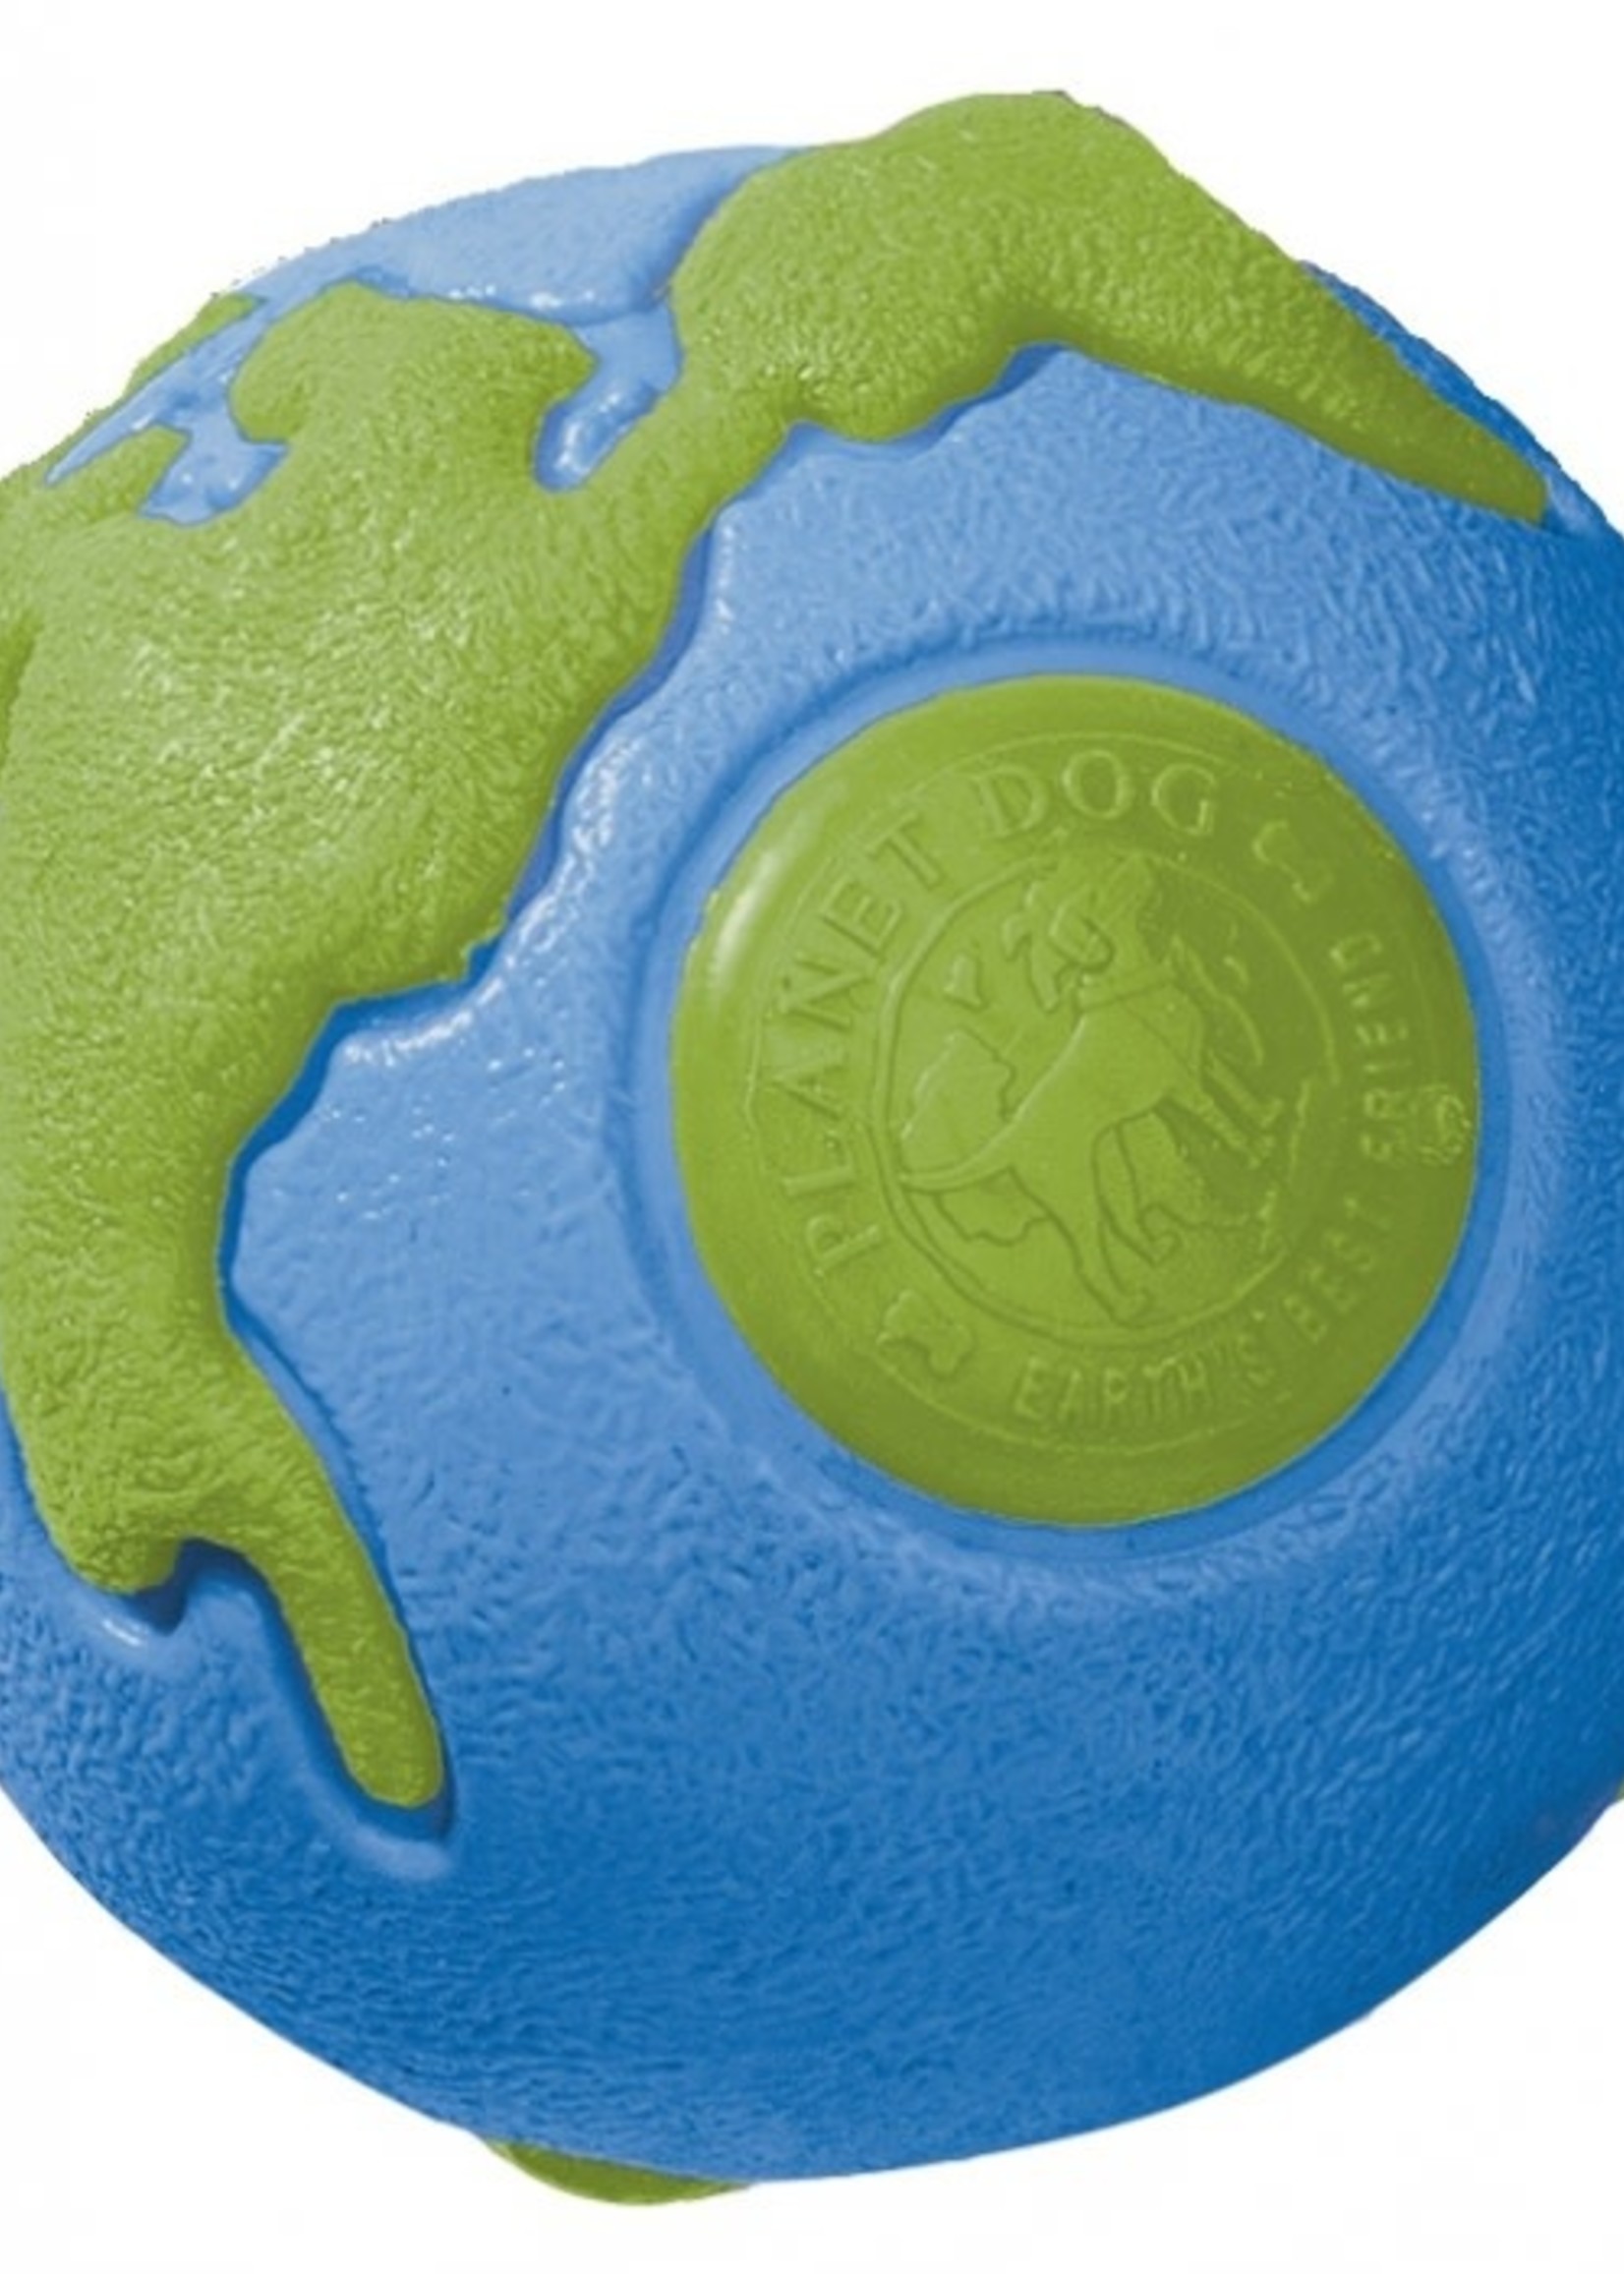 PlanetDog PD Orbee Tuff Ball Blue/Green Large